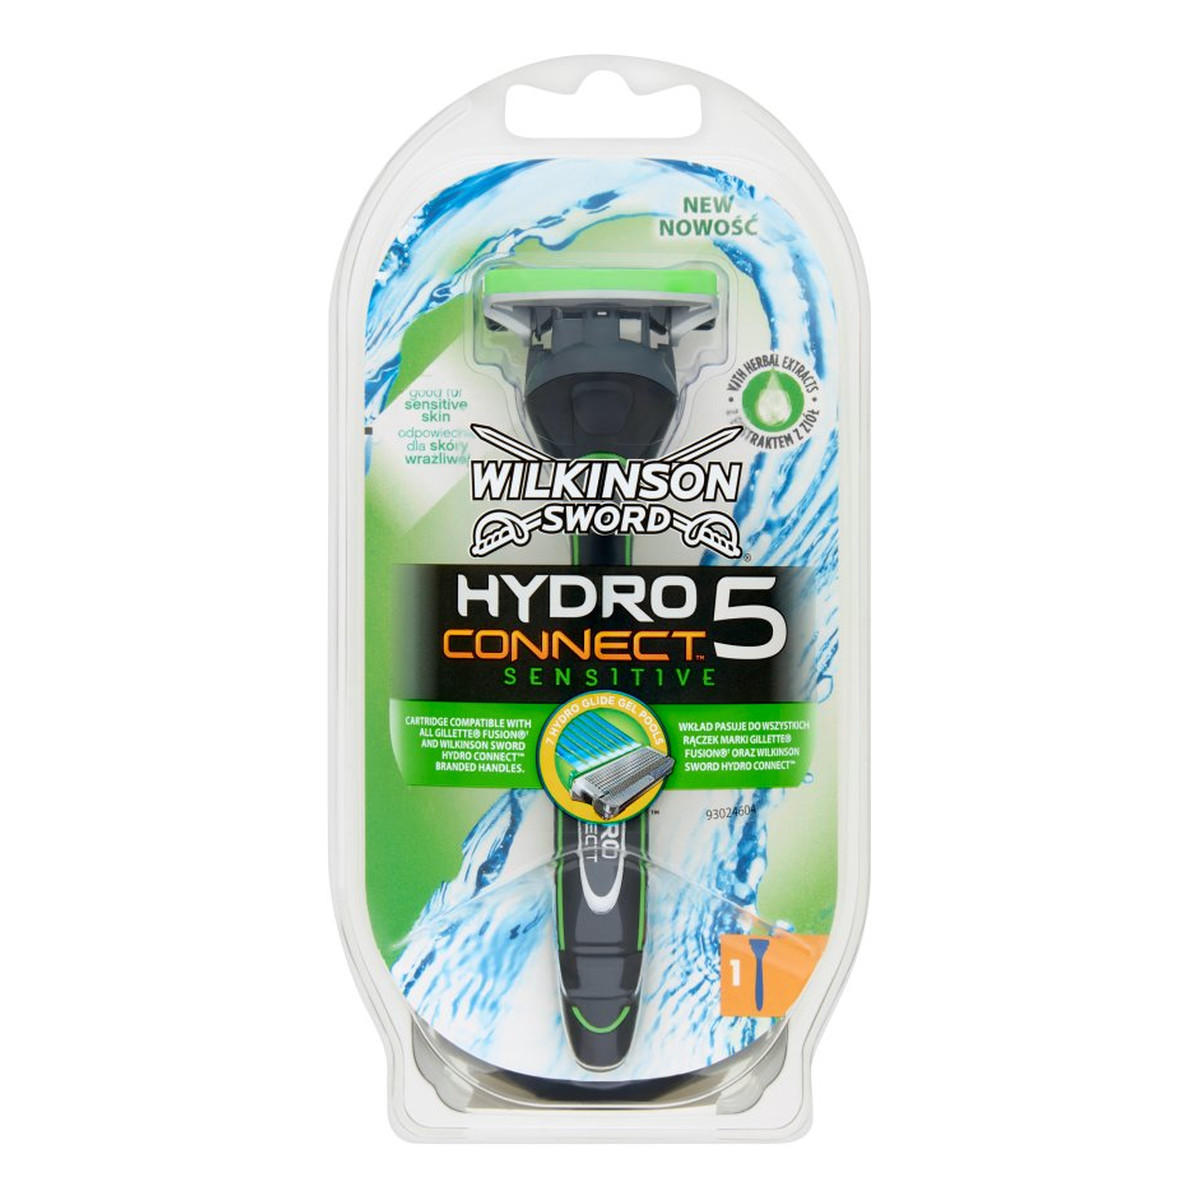 Wilkinson Hydro Connect 5 maszynka do golenia do skóry wrażliwej